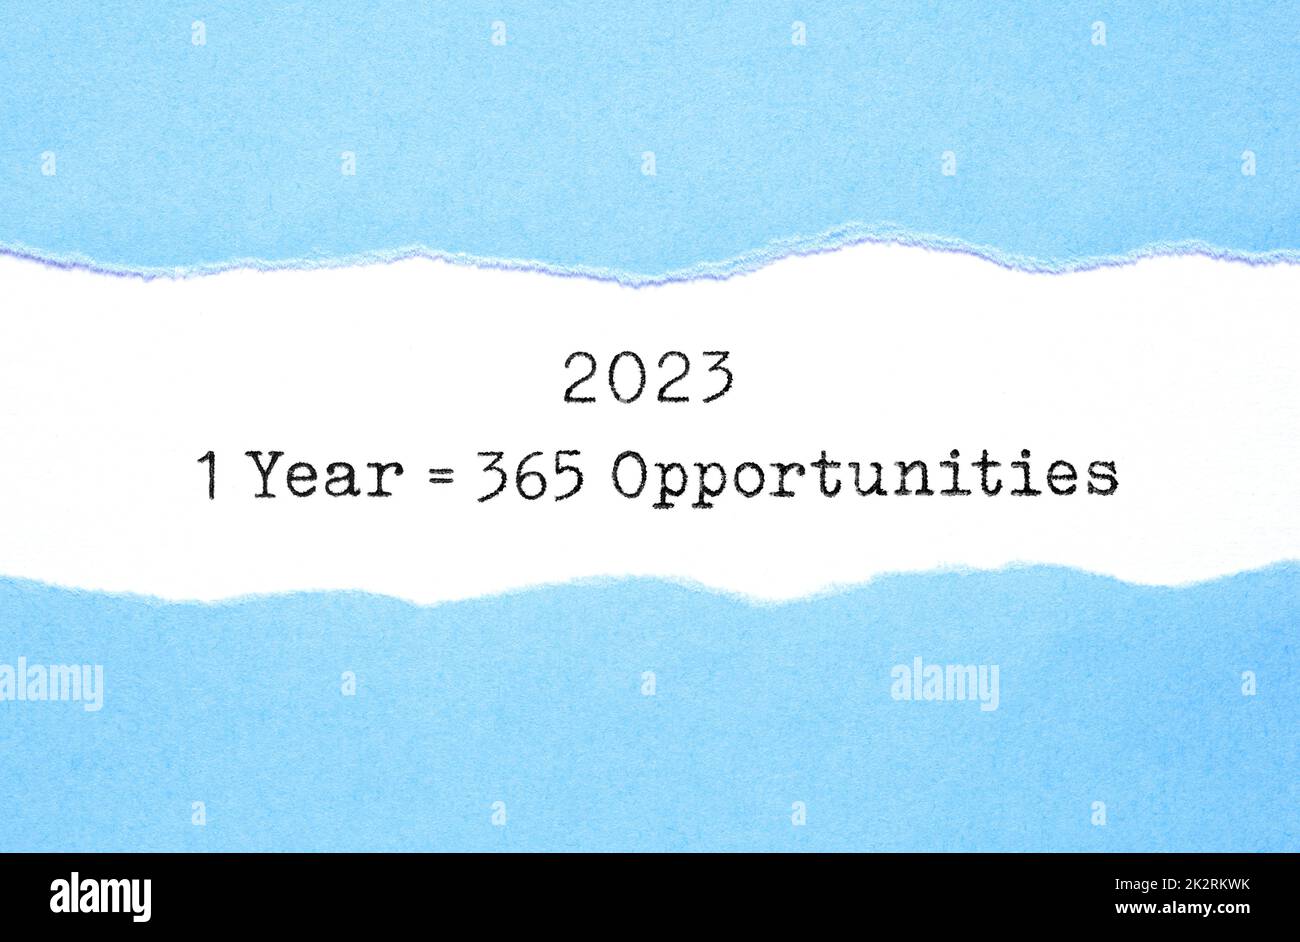 Inspirierendes Zitat 1 Jahr 2023 entspricht 365 Gelegenheiten, die hinter zerrissenem blauem Papier auftauchen. Neues Motivationskonzept. Stockfoto